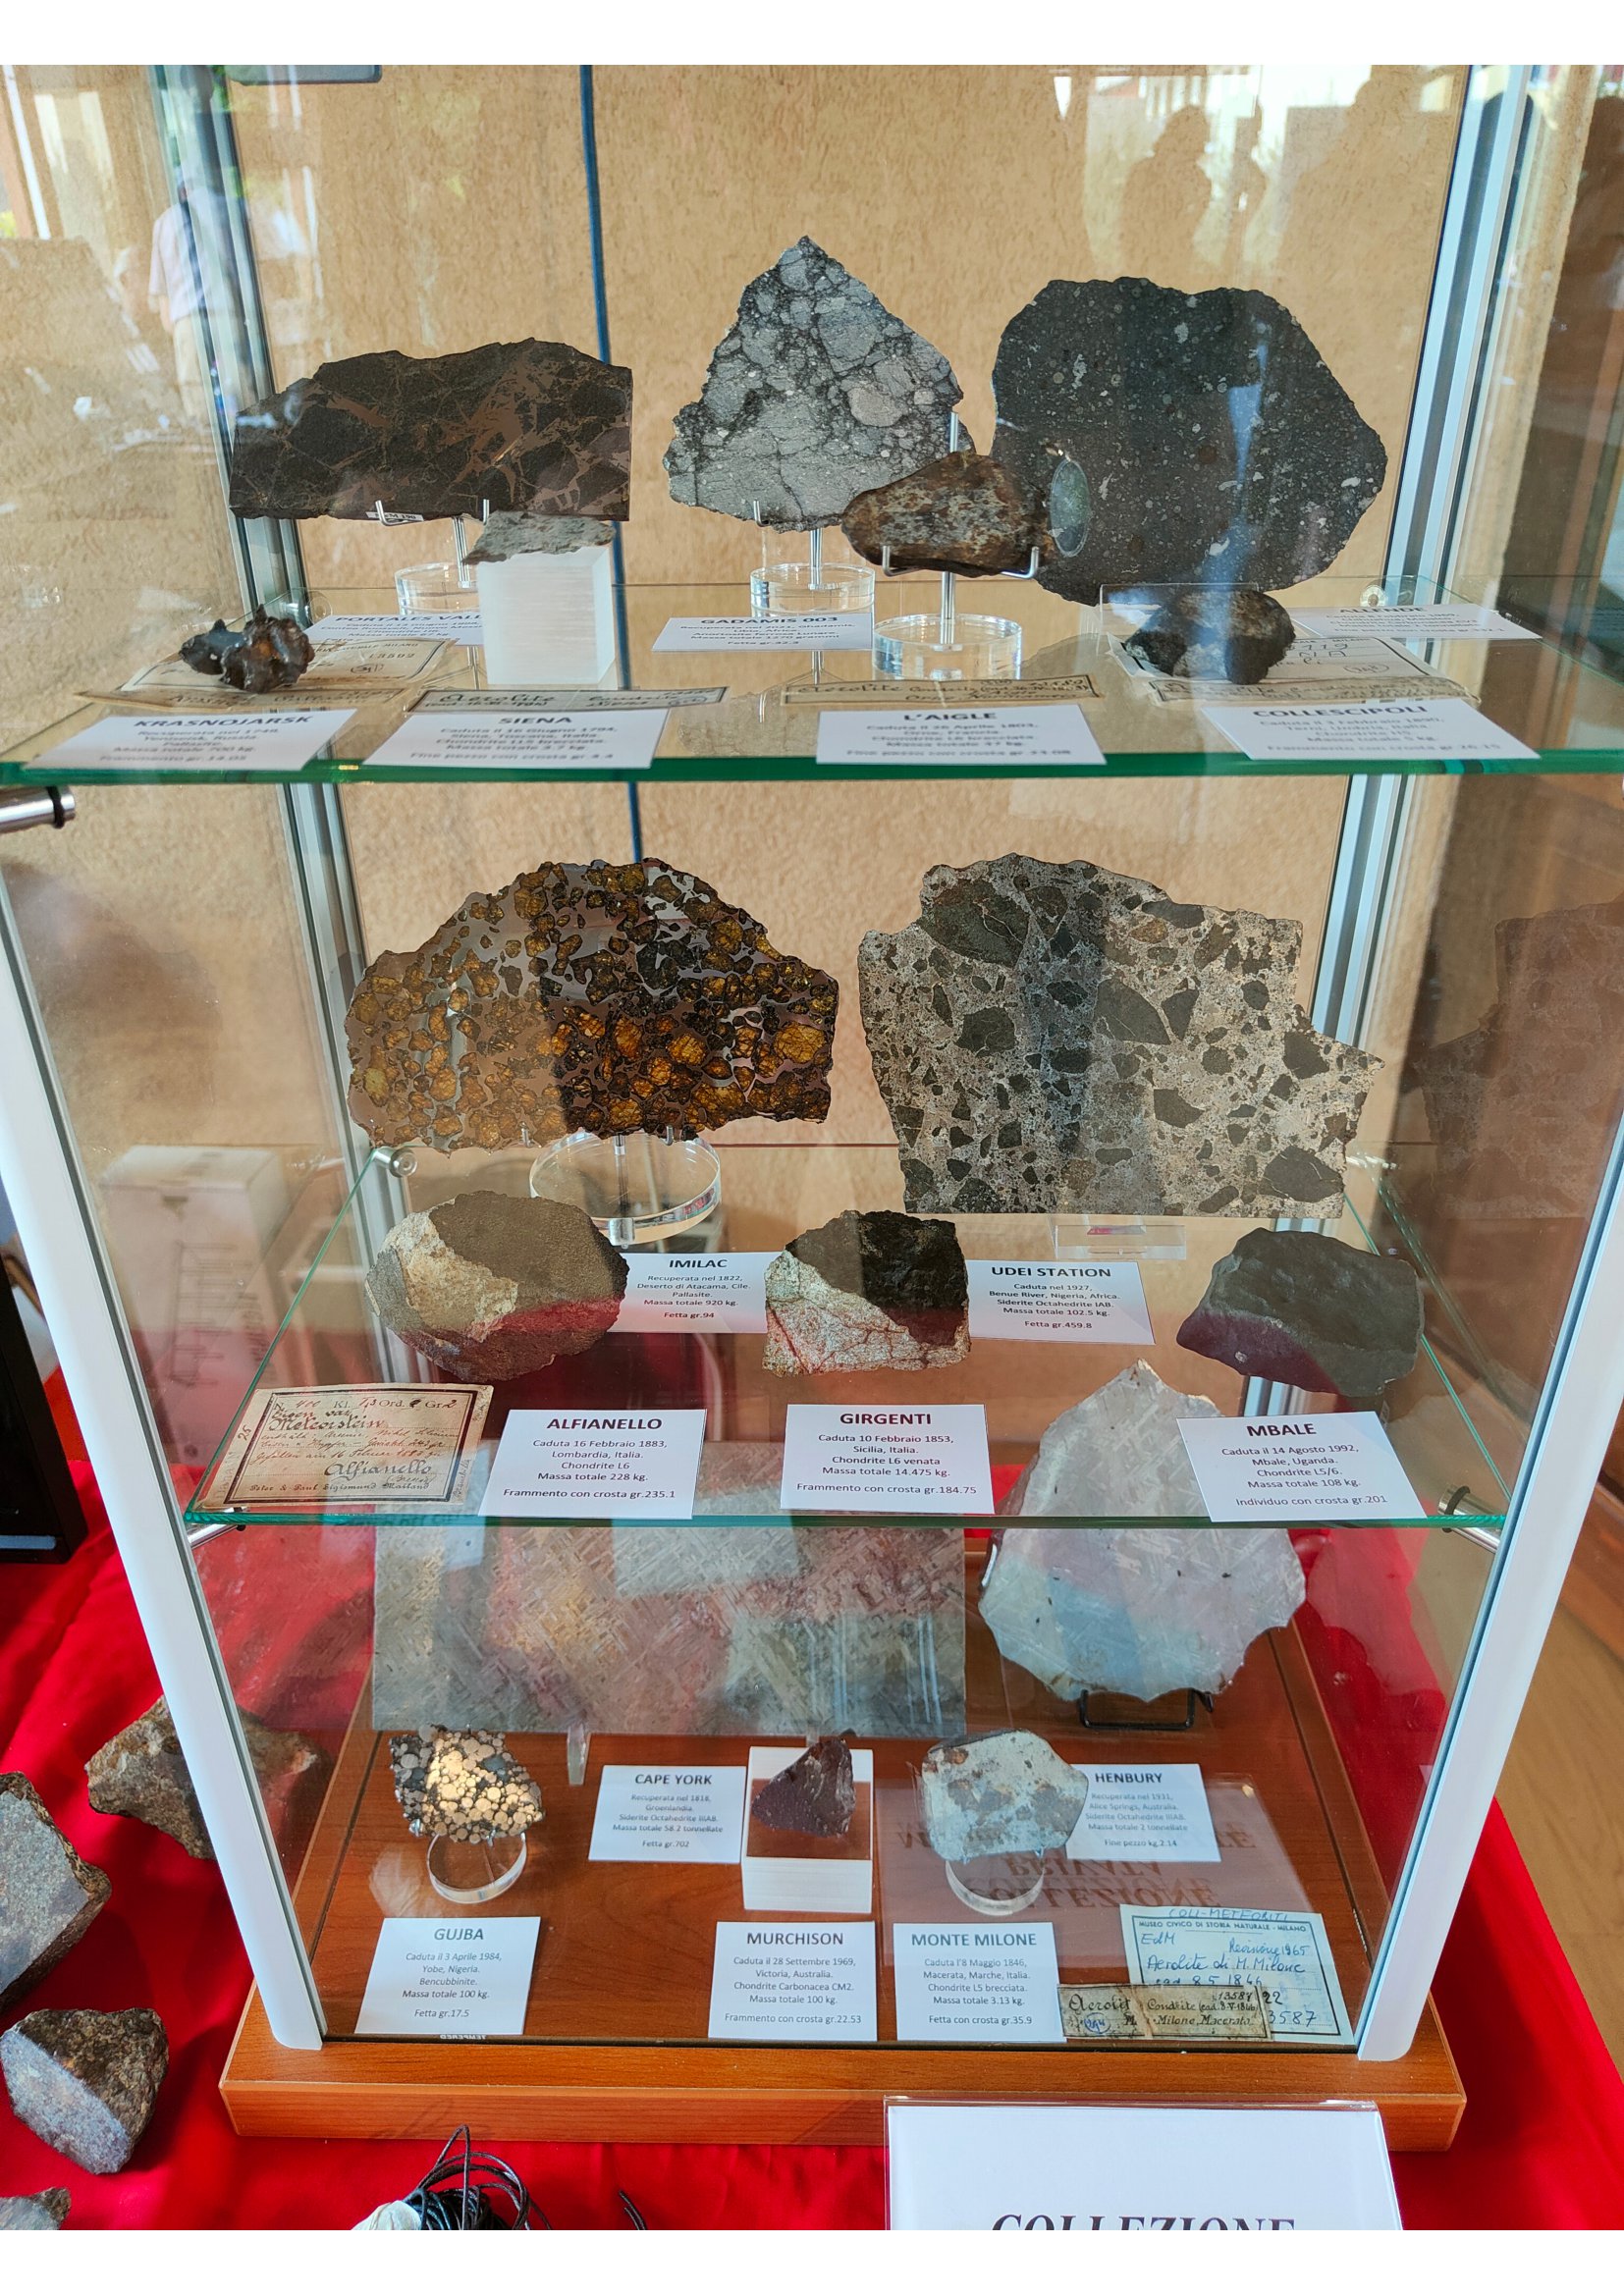 Meteoriti solo per esposizione. La vetrina delle meraviglie  proposta da Matteo Chinellato con alcuni dei campioni più importanti della sua eccezionale collezione.
(Foto M. Chinellato)